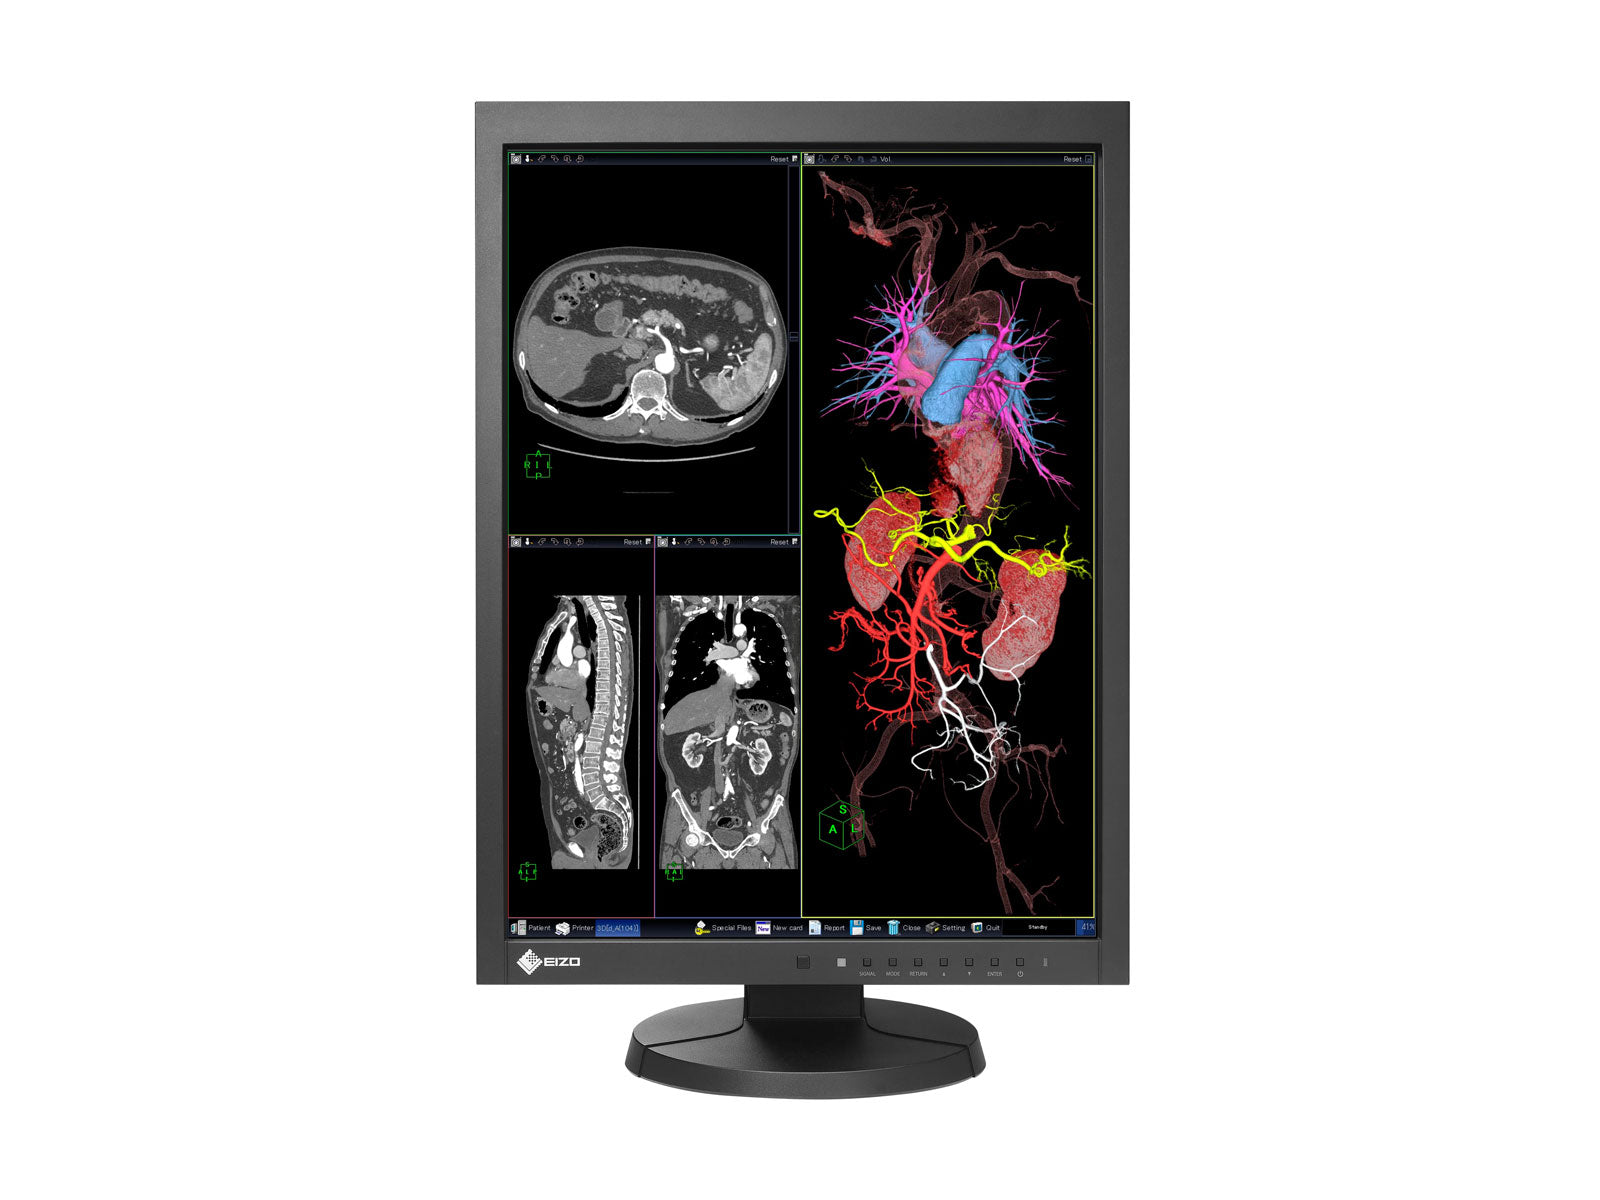 Eizo RadiForce MX215 2MP 21" Moniteur d'affichage de radiologie diagnostique LCD couleur (MX215-BK)